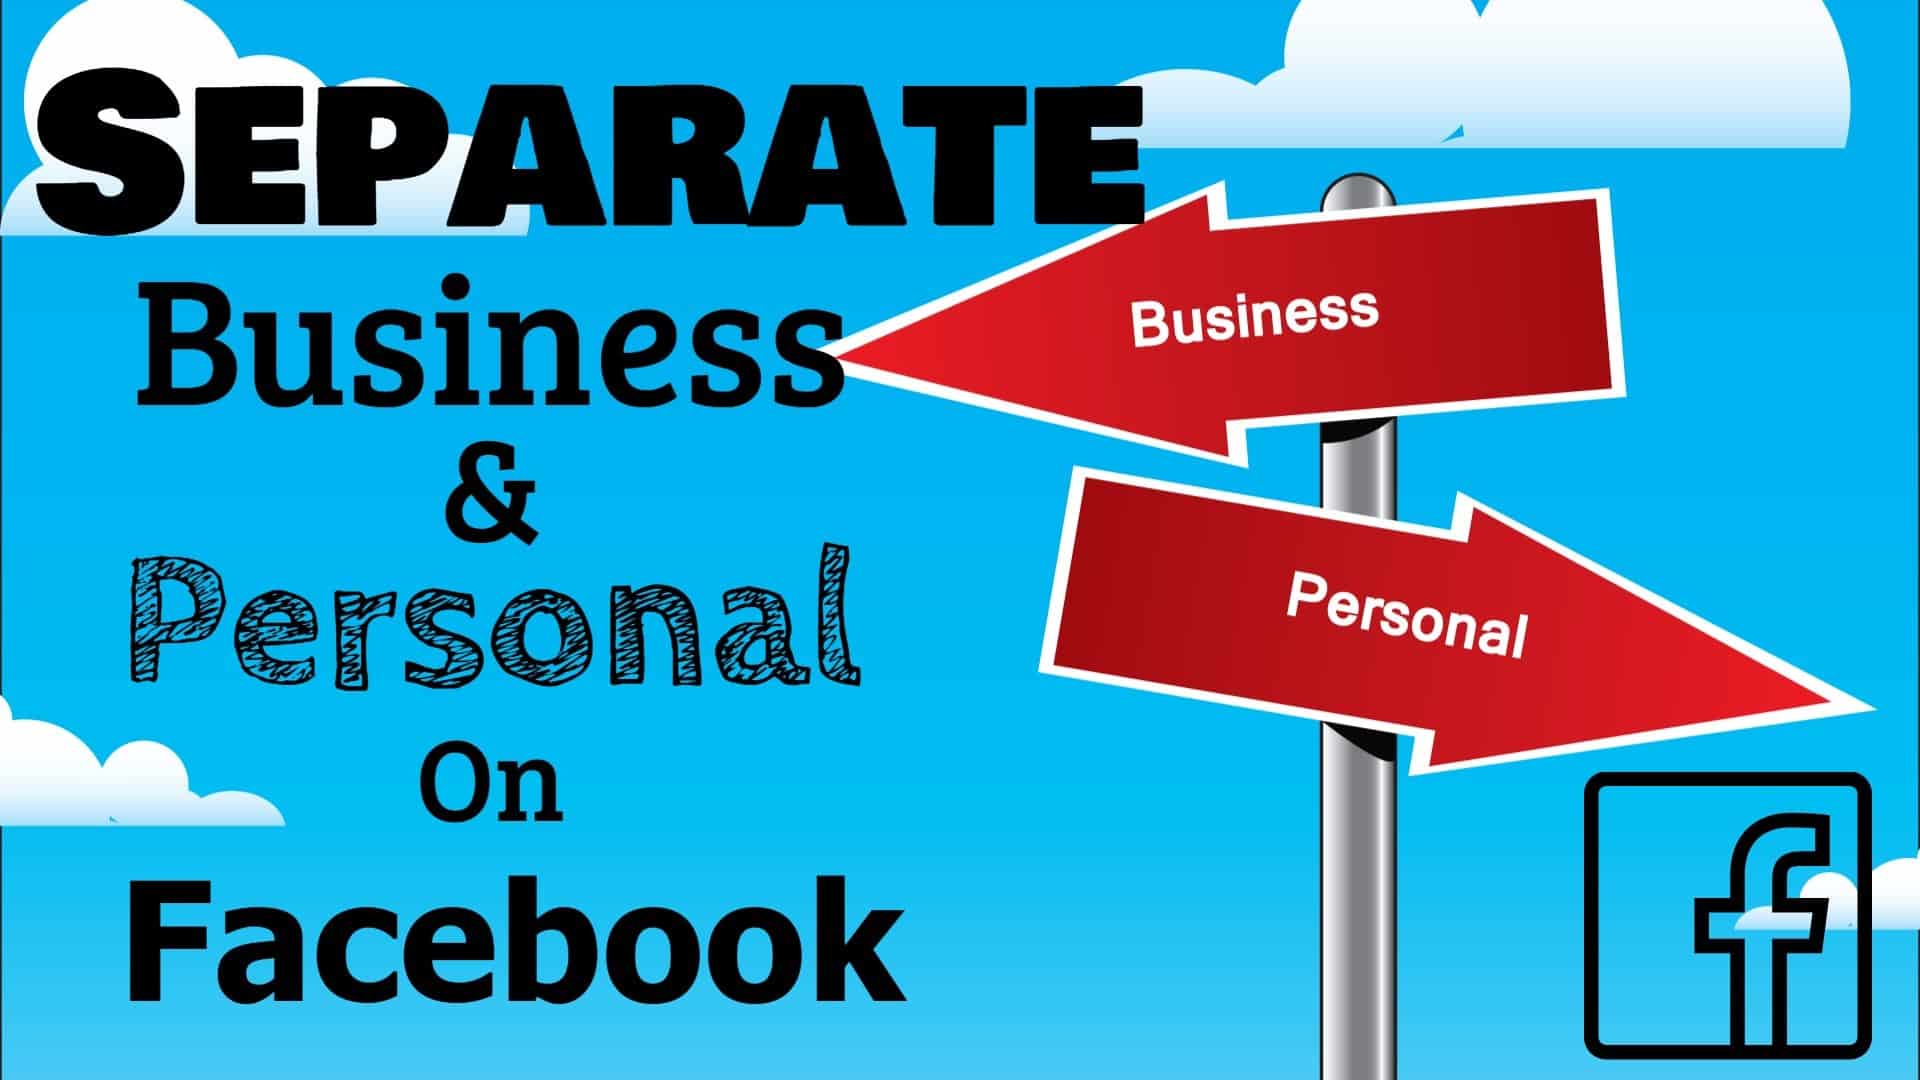 Mantenga su negocio fuera de Facebook